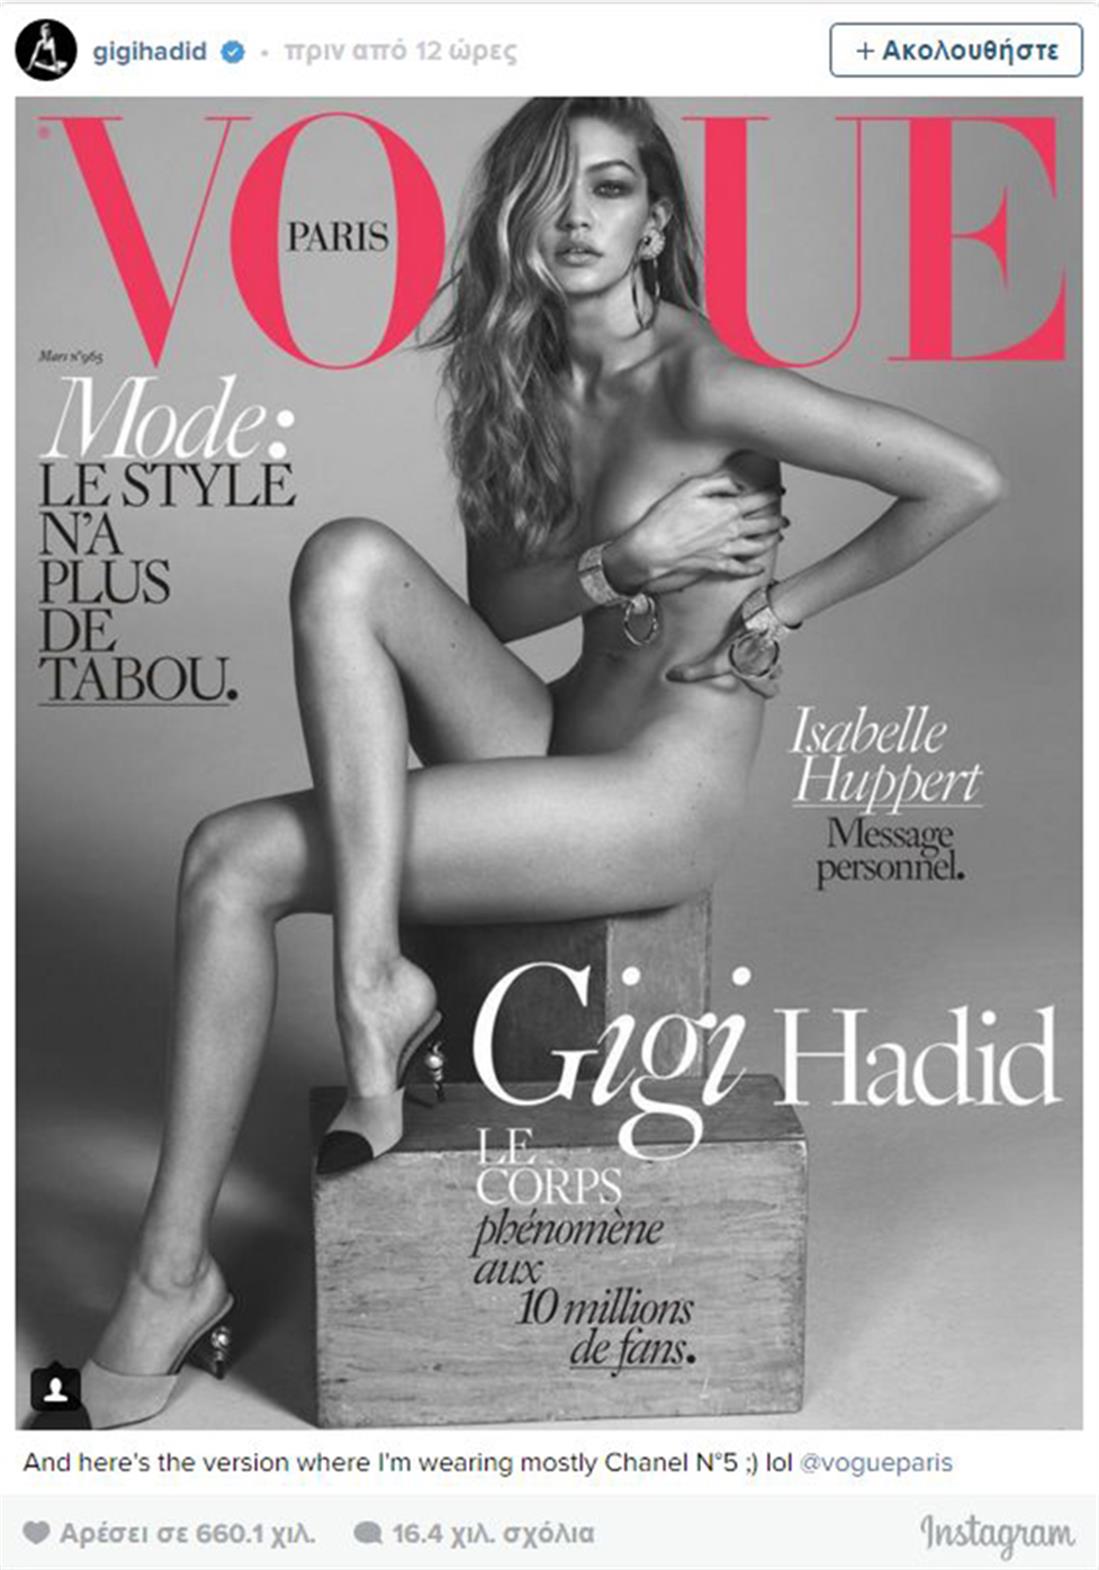 Τζίτζι Χαντίντ - εξώφυλλο - Vogue - γυμνή